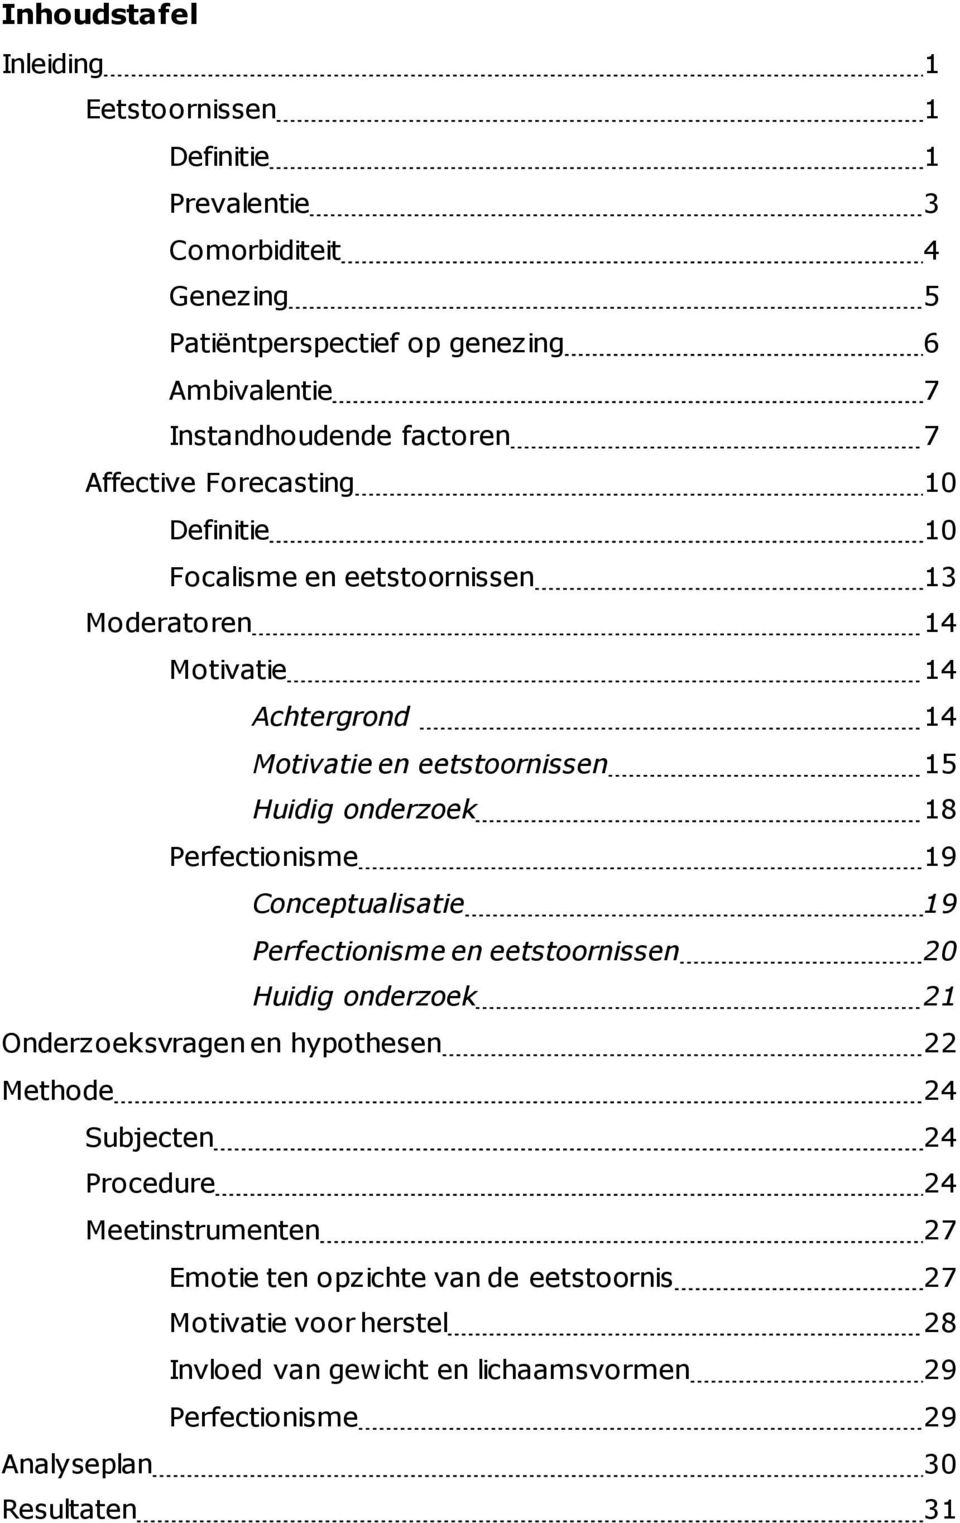 Perfectionisme 19 Conceptualisatie 19 Perfectionisme en eetstoornissen 20 Huidig onderzoek 21 Onderzoeksvragen en hypothesen 22 Methode 24 Subjecten 24 Procedure 24